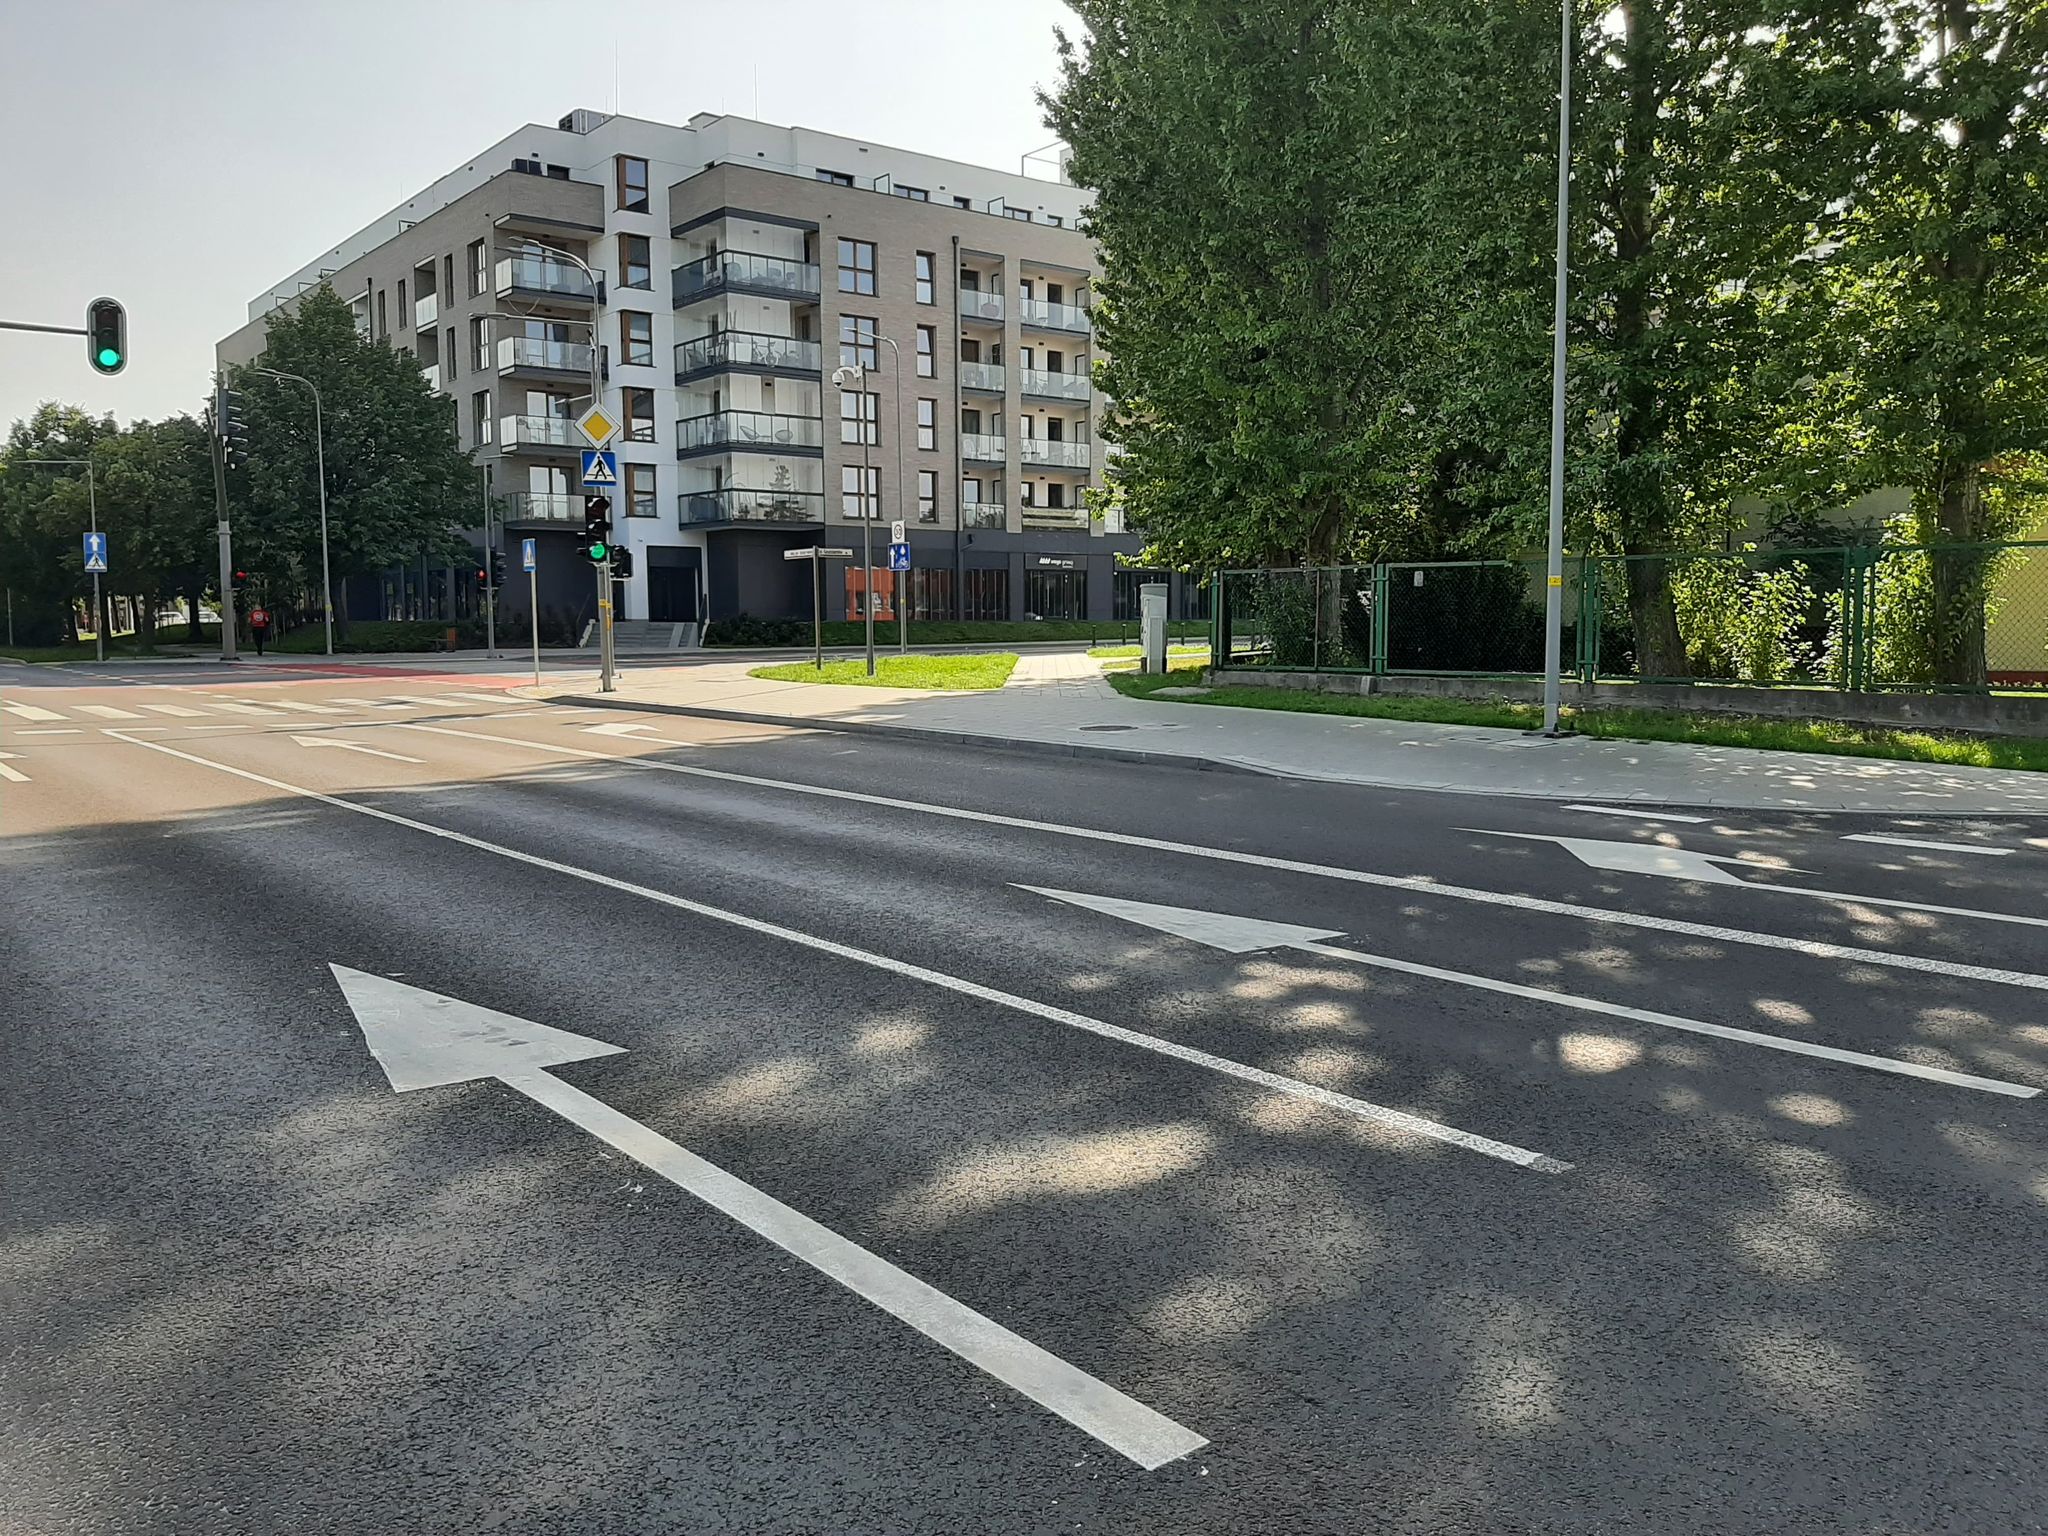 Zdjęcie przedstawia widok na skrzyżowanie alei generała Hallera i ulicy Grudziądzkiej po jego przebudowie.